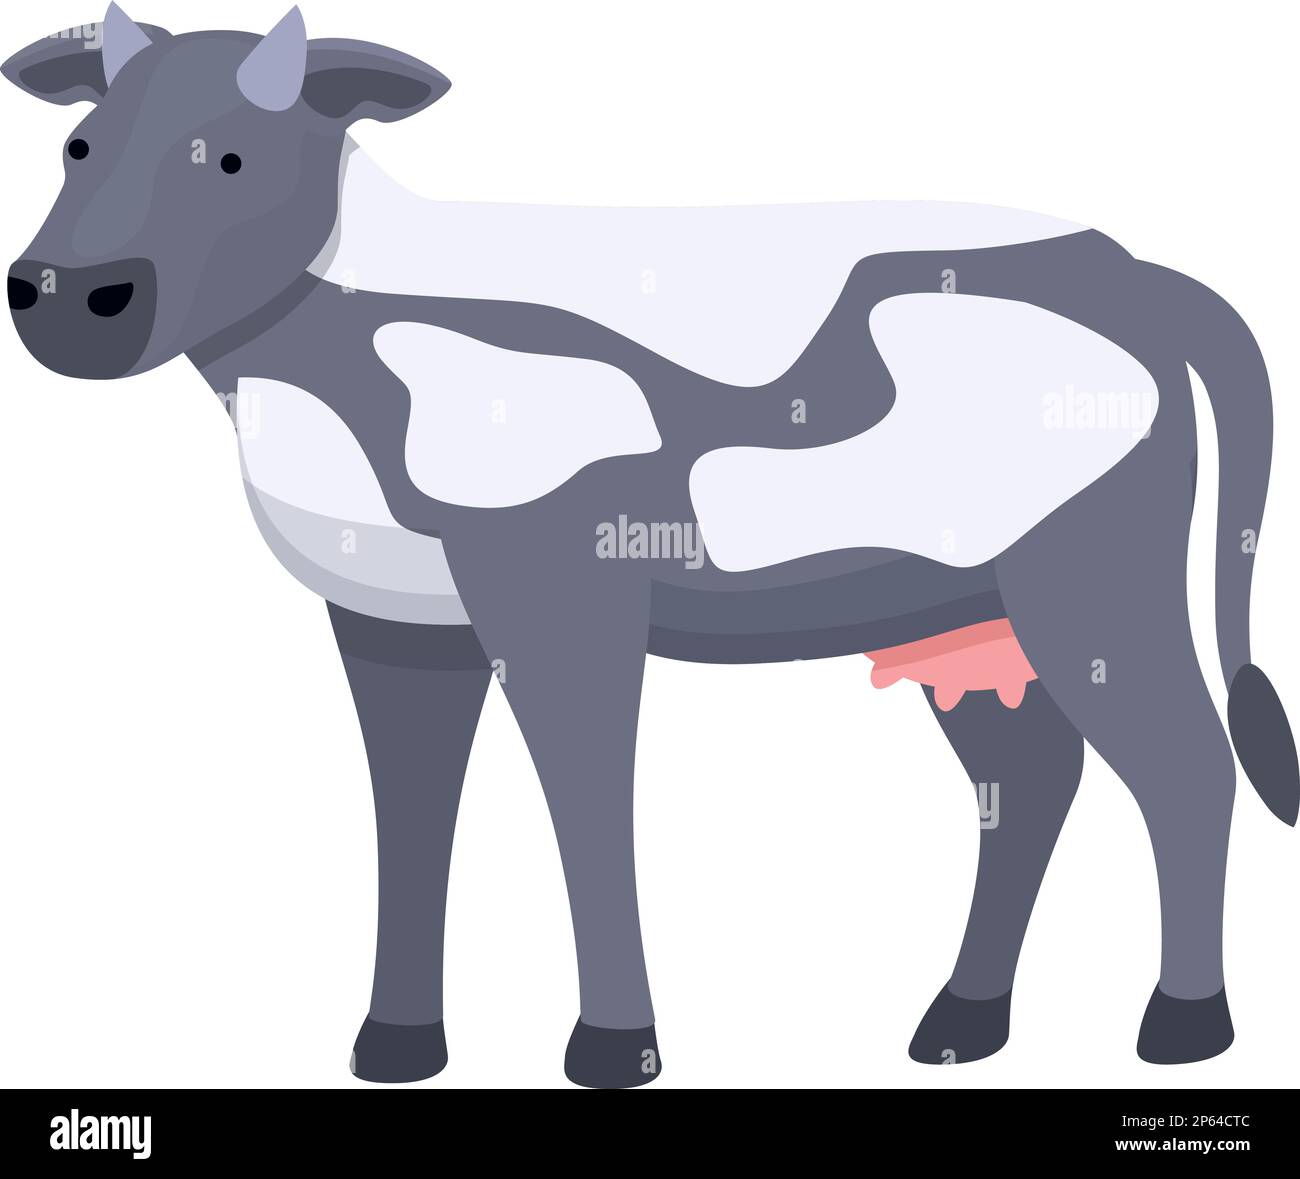 Vecteur de dessin animé d'icône représentant une vache à pois. Ferme de bétail. Champ EAT Illustration de Vecteur